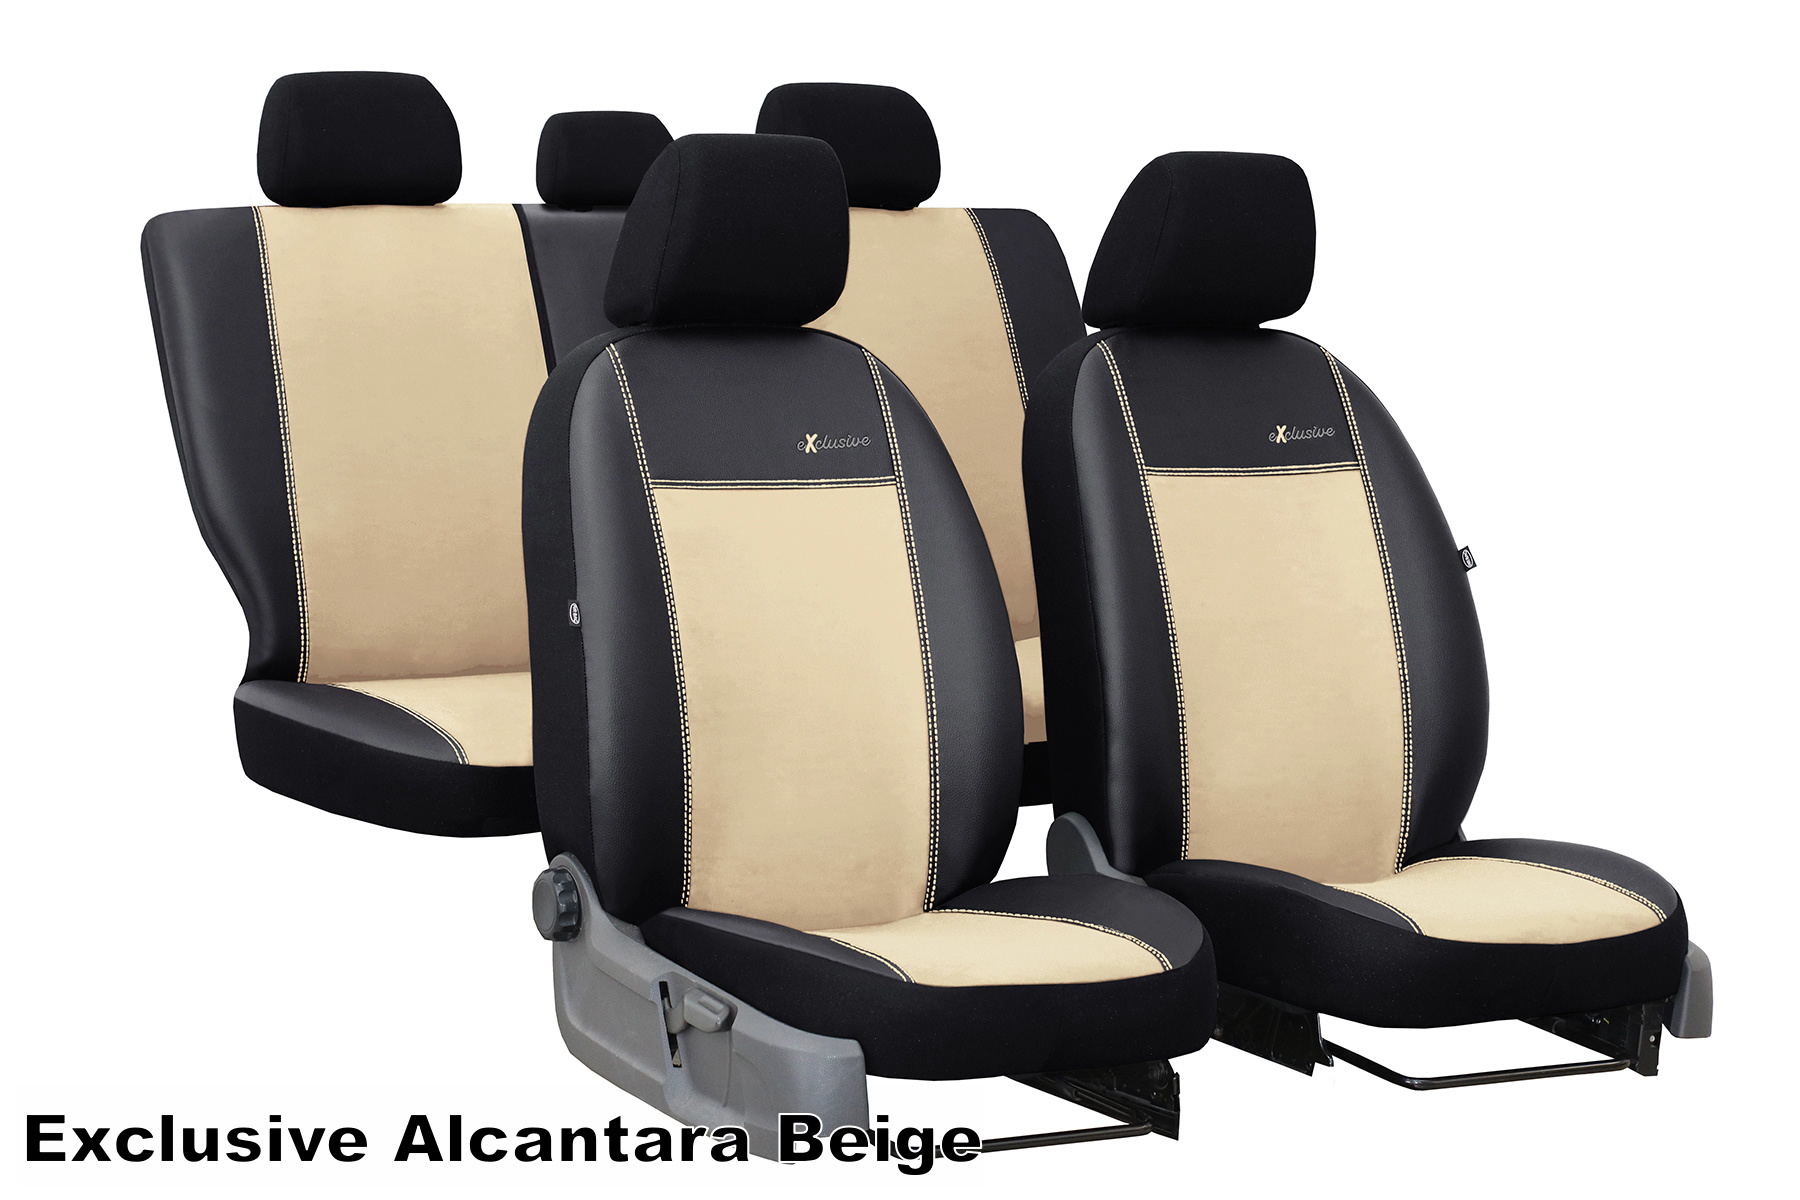 1* Autositzbezug Universal Sitzschoner Fahrersitz Auto-Sitzauflage Vorne  Matte